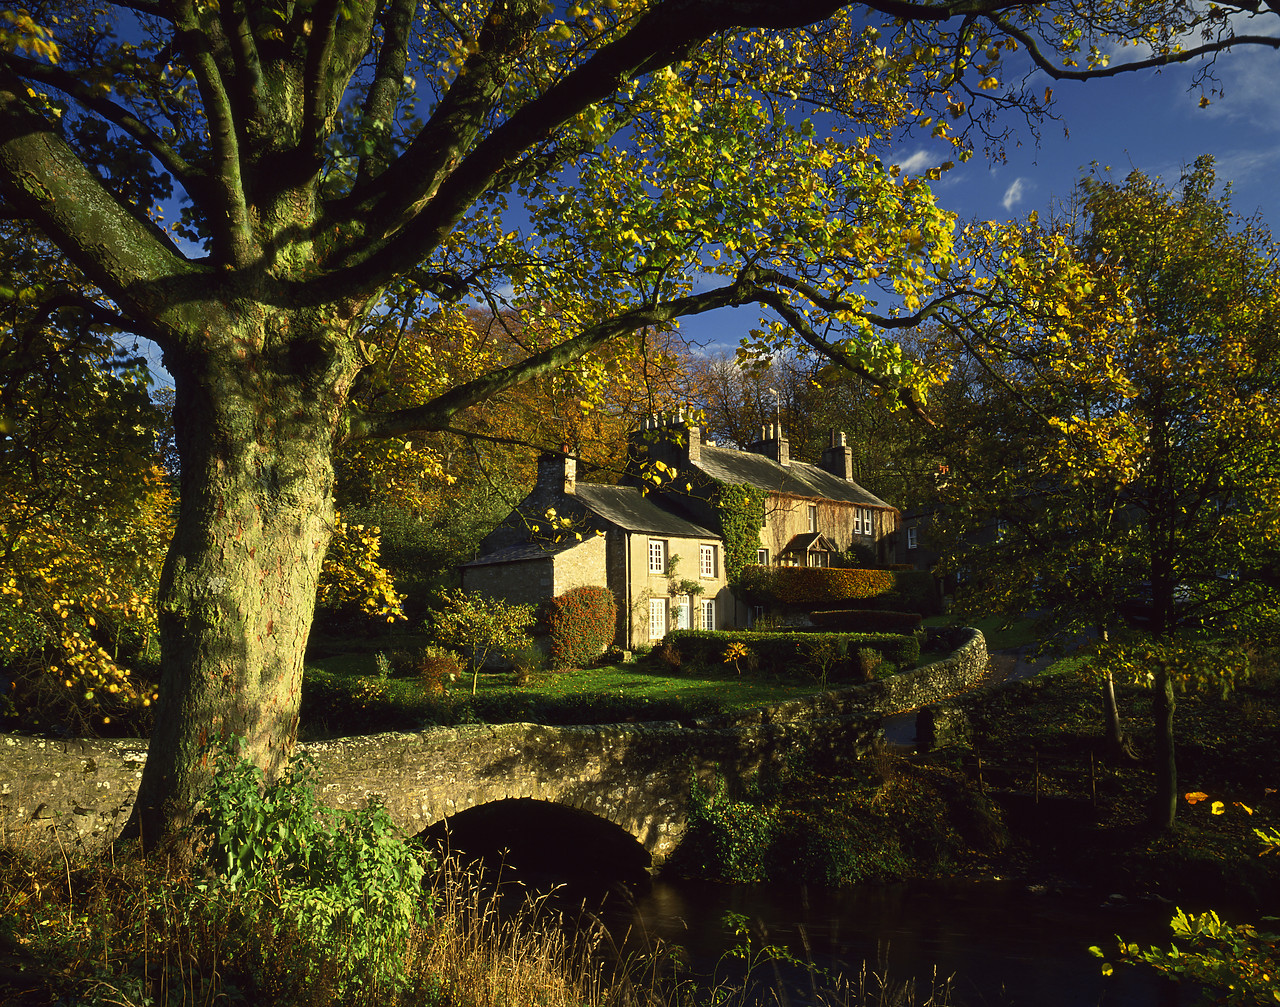 #892505-1 - Stone Bridge and Cottages, Clapham, Yorkshire, England